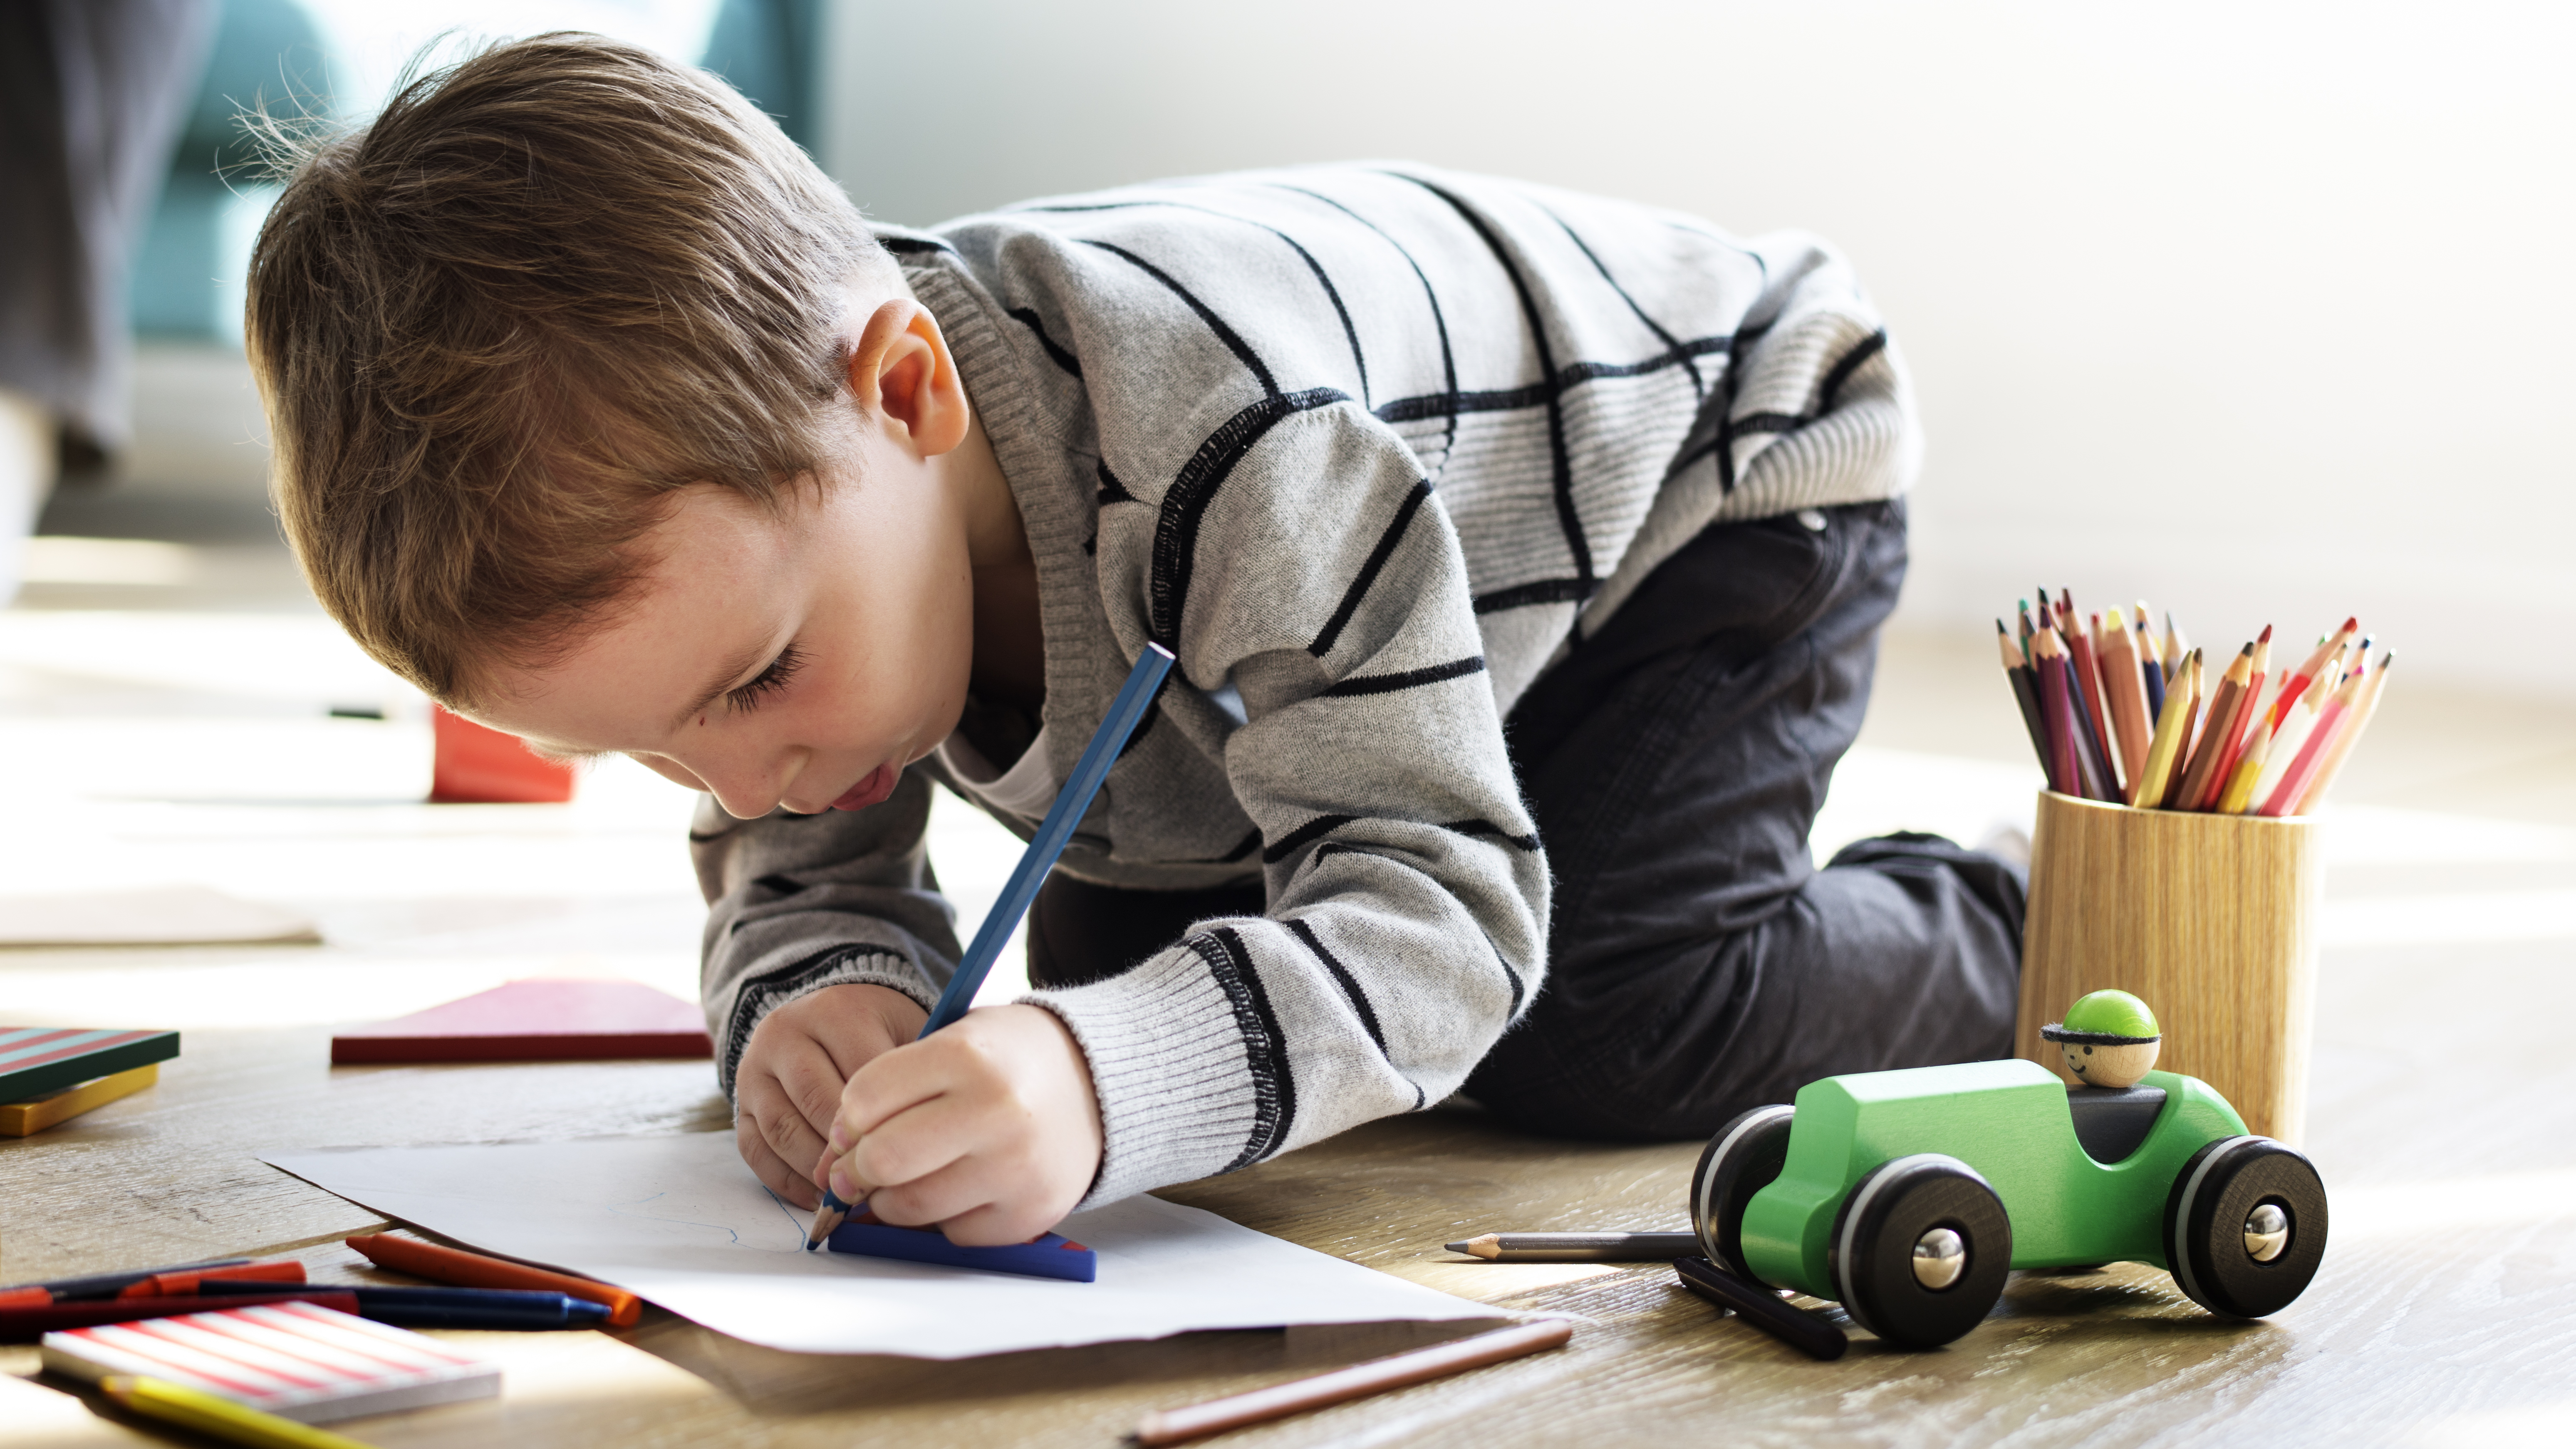 Little boy is drawing | Source: Shutterstock.com